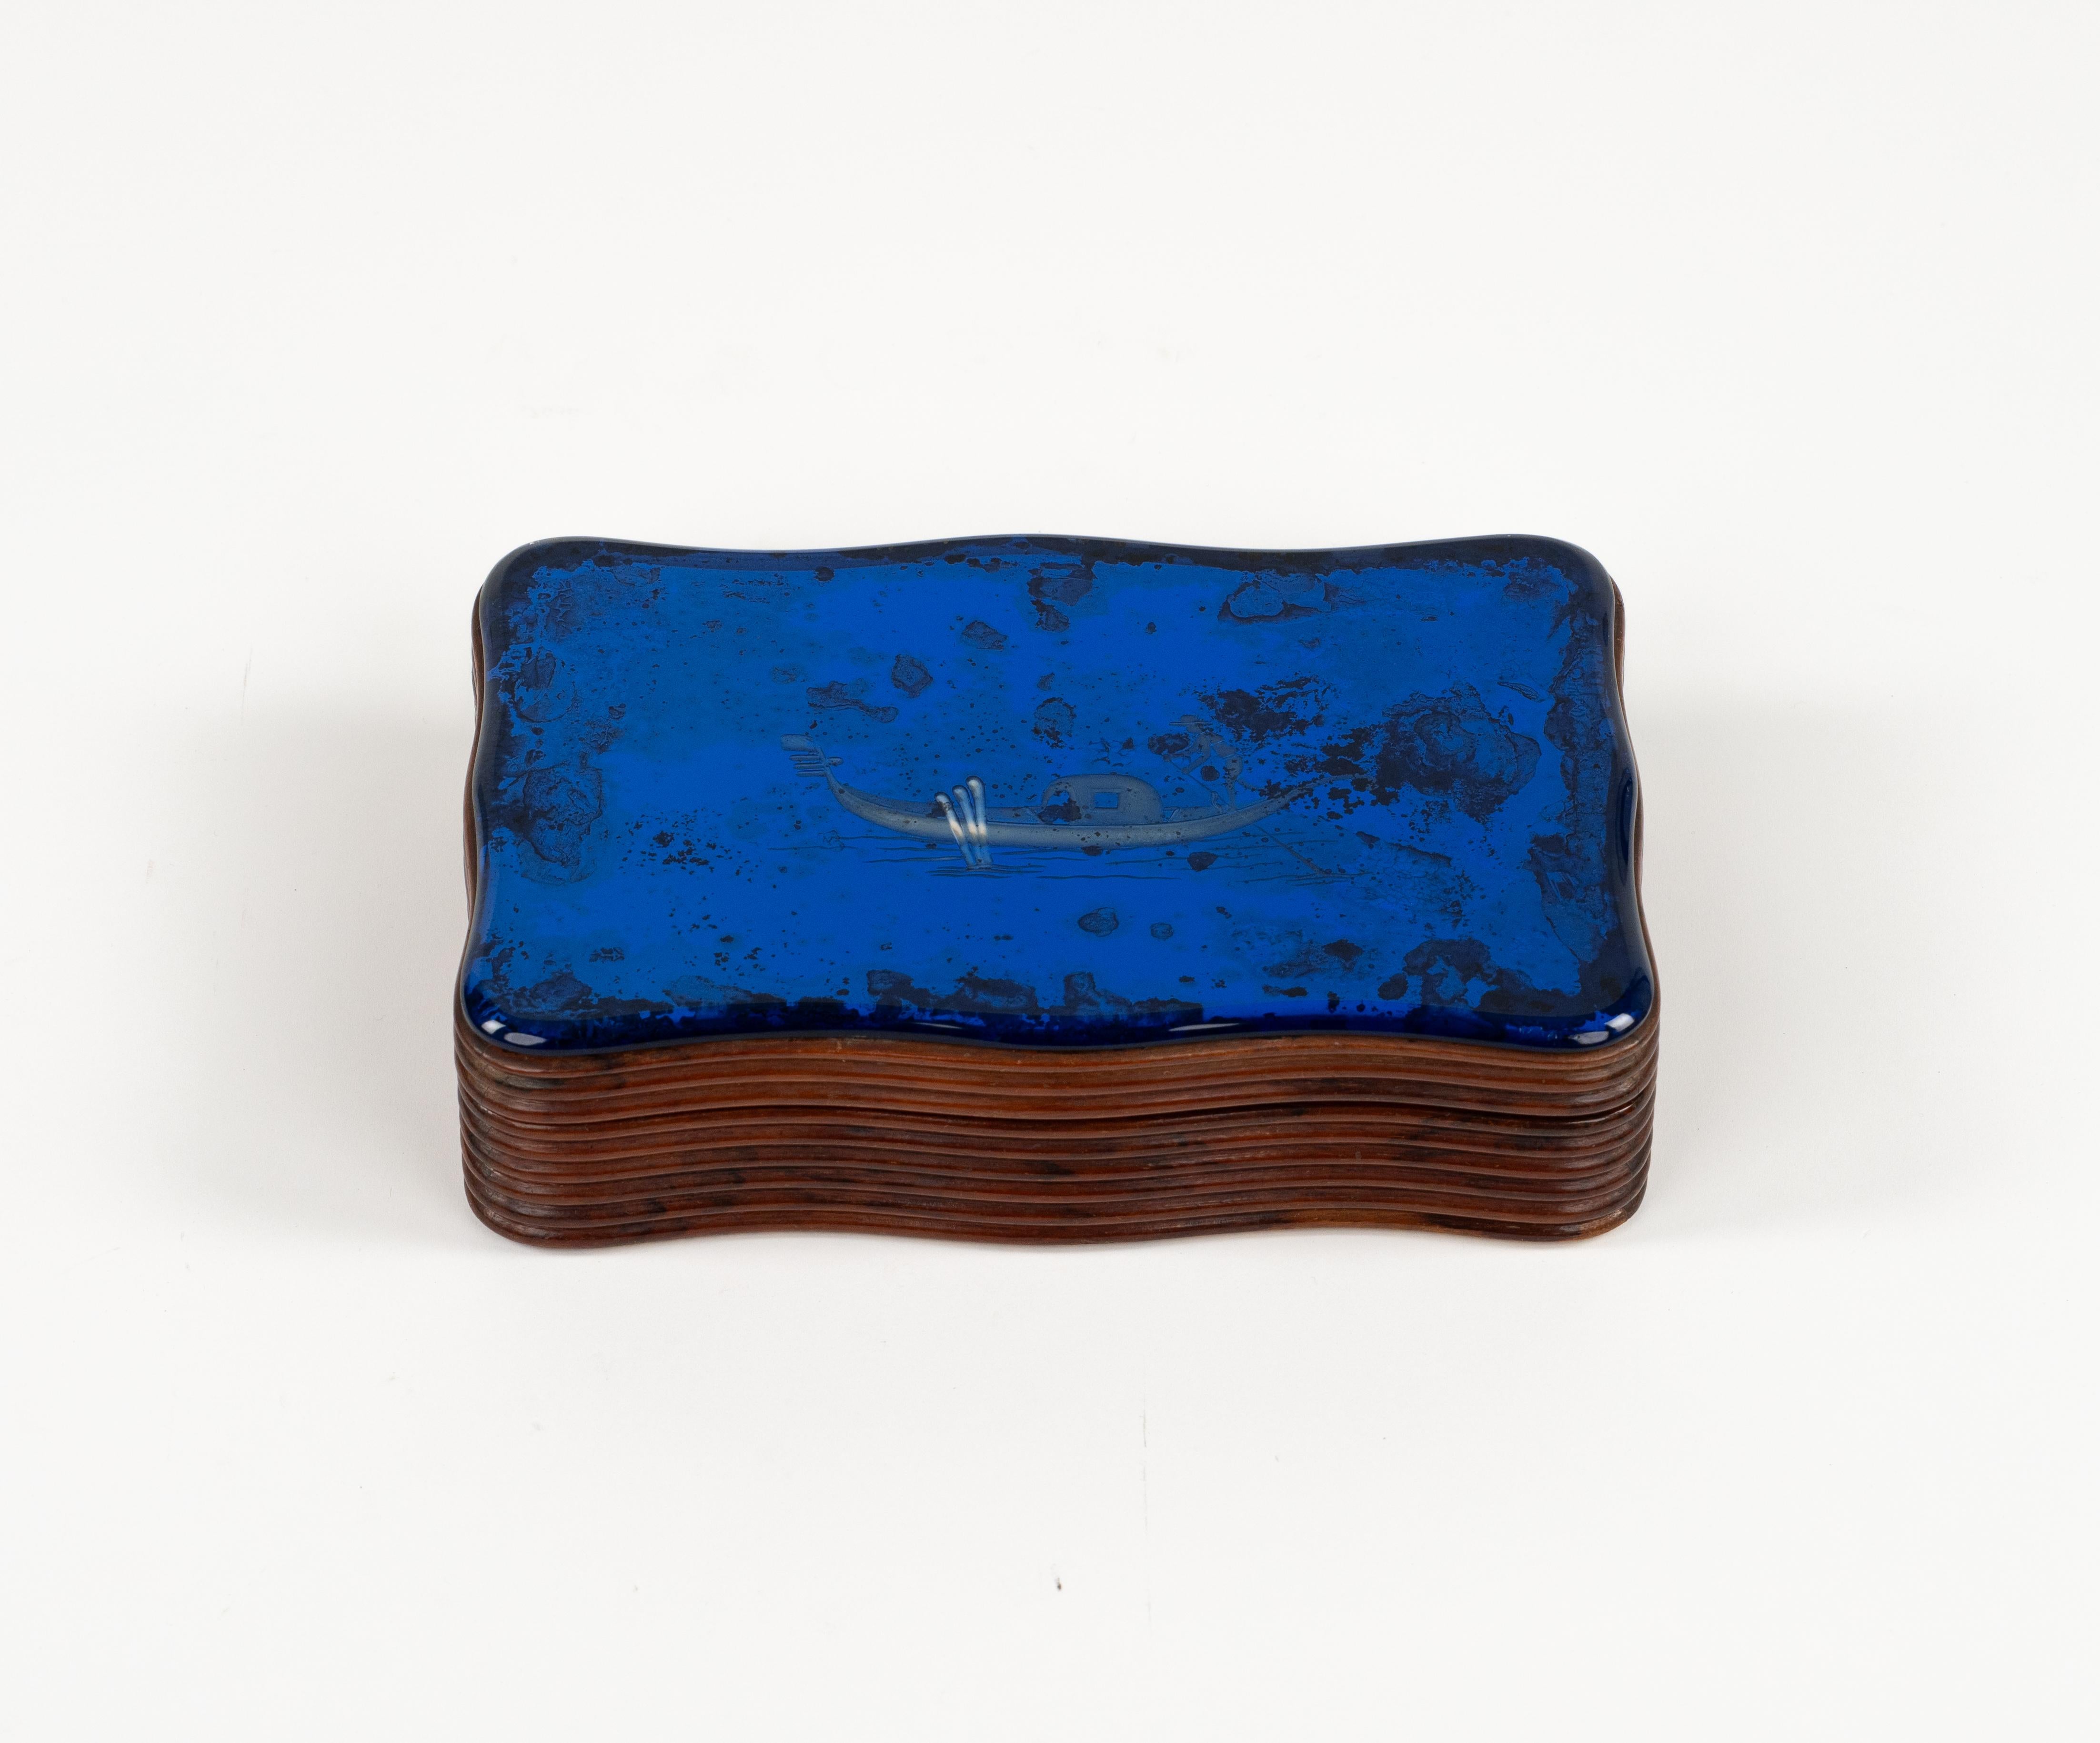 Etonnante boîte rectangulaire ondulée en bois et cristal bleu miroité gravure d'une gondole vénitienne gravure  attribuée à Pietro Chiesa et Gio Ponti pour Fontana Arte.

Fabriqué en Italie dans les années 1930.

Un véritable objet de collection à